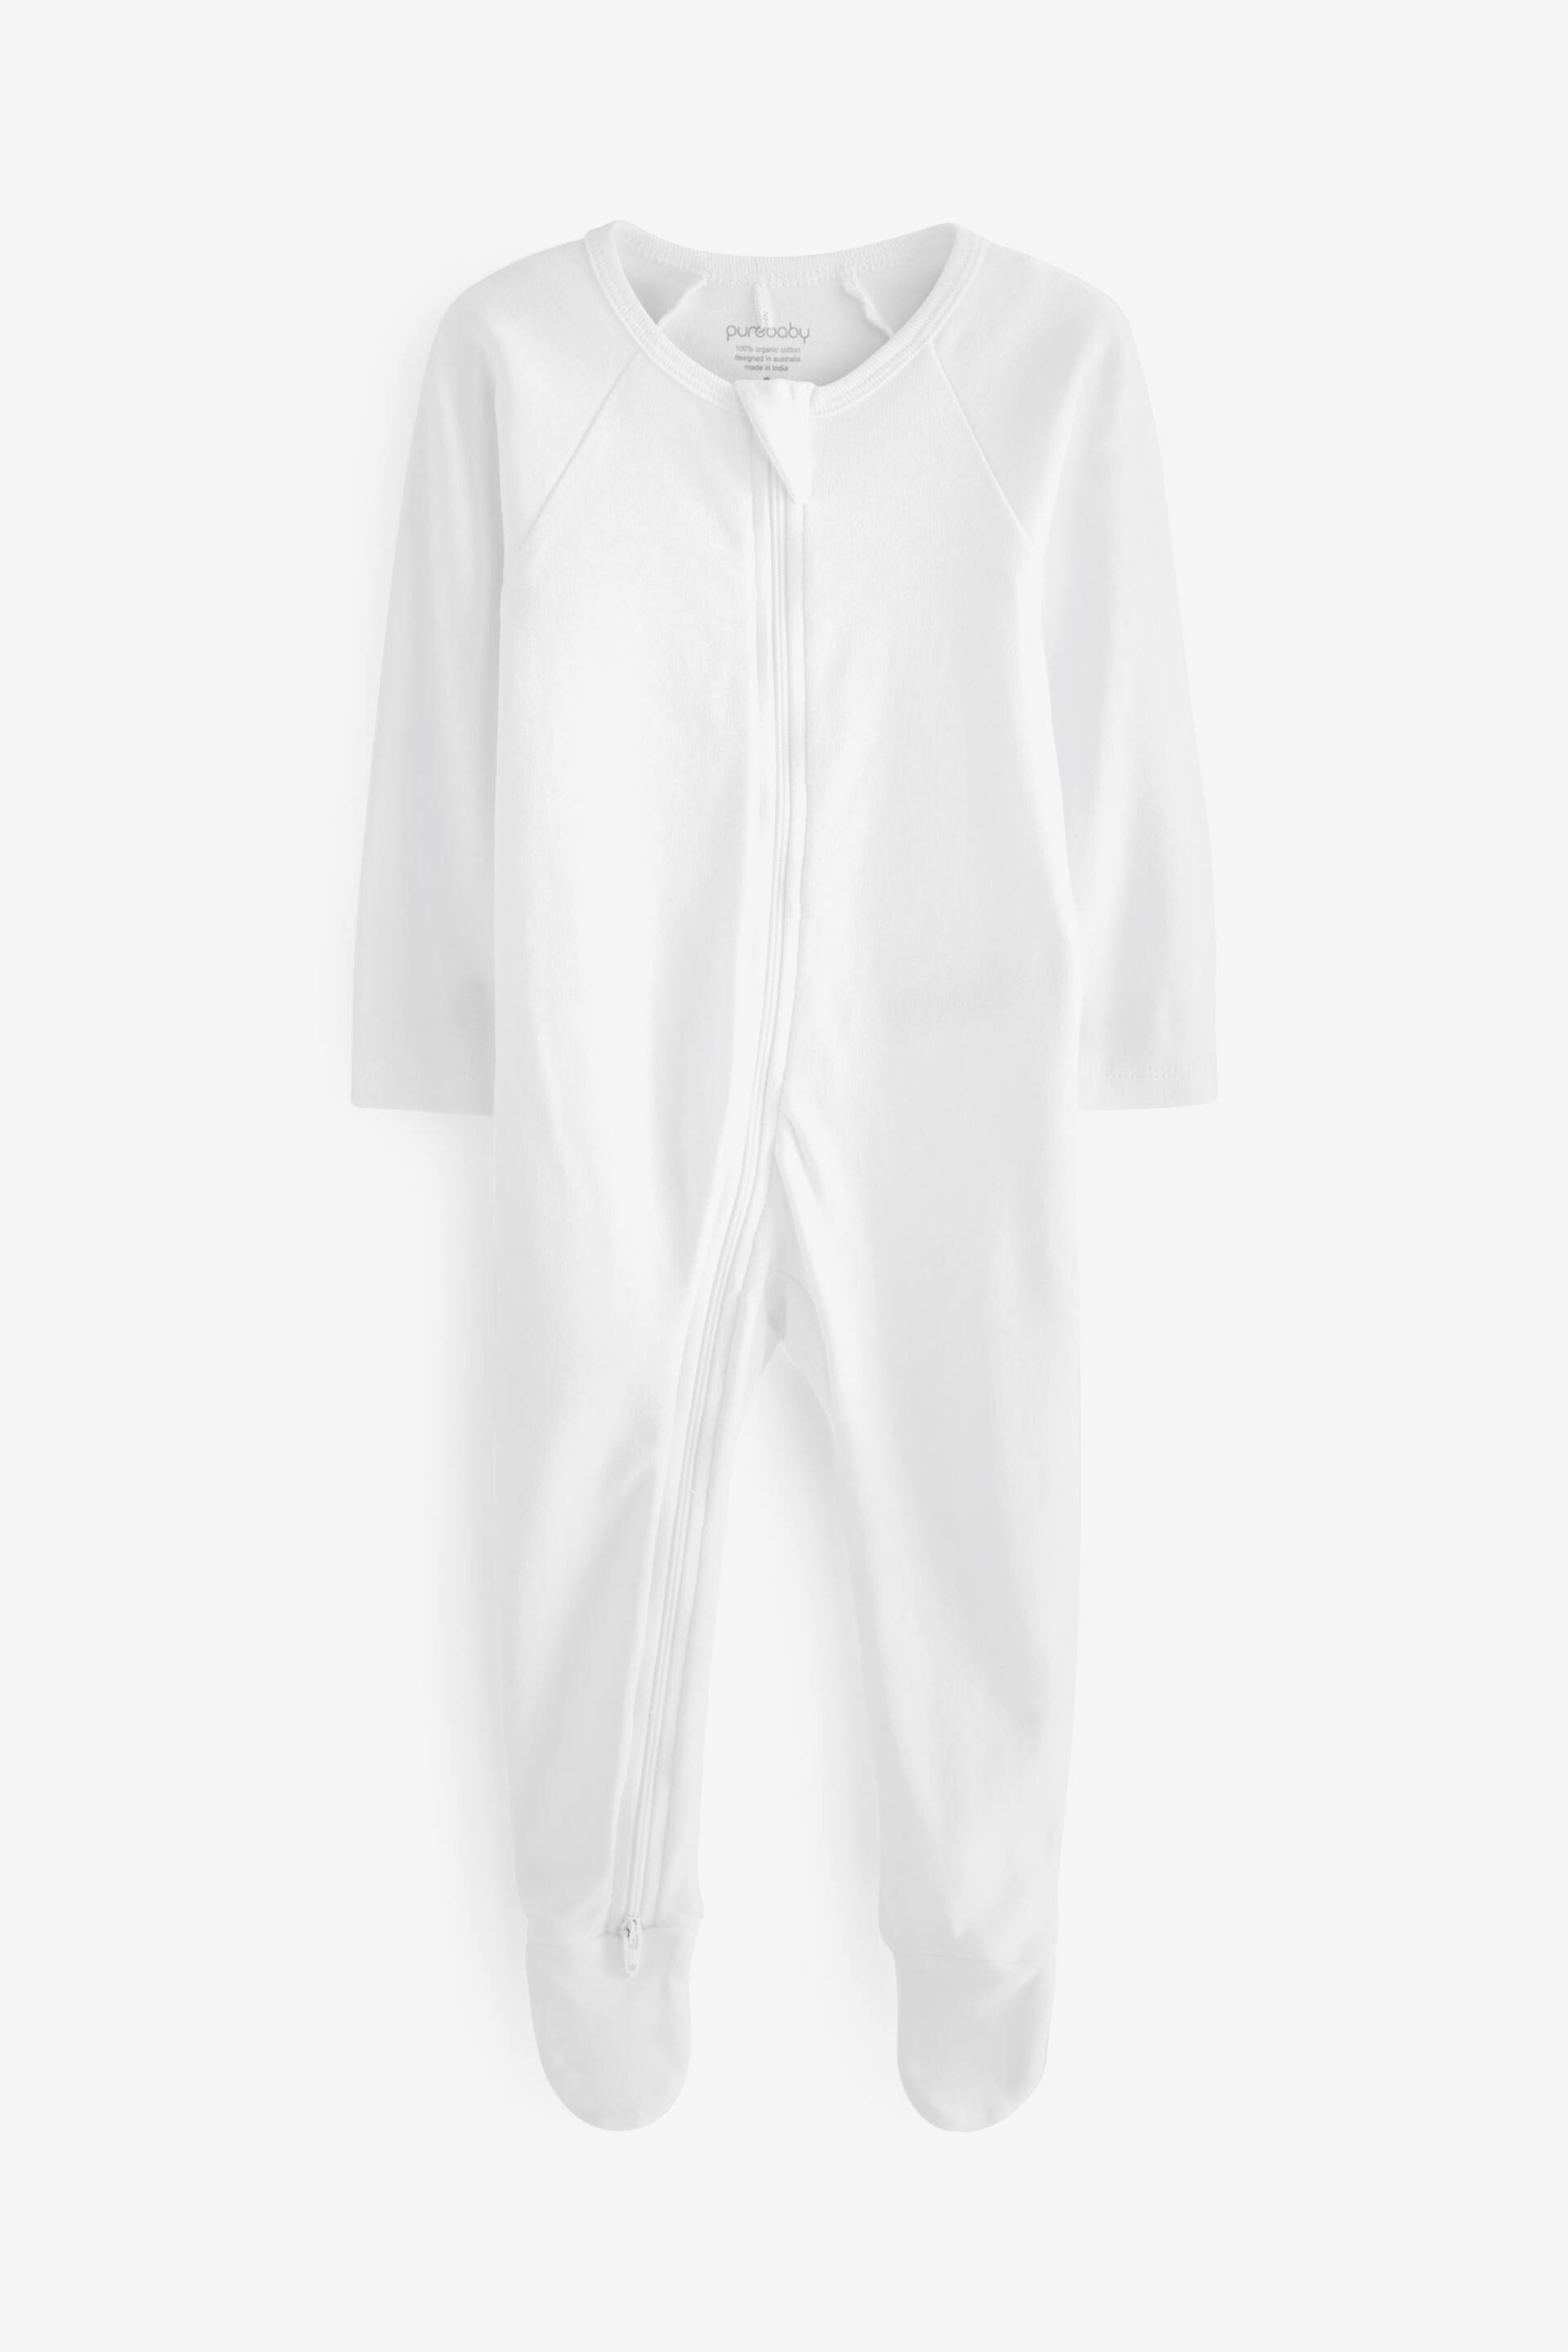 Purebaby Zip Sleepsuits 4 Pack - Image 5 of 7